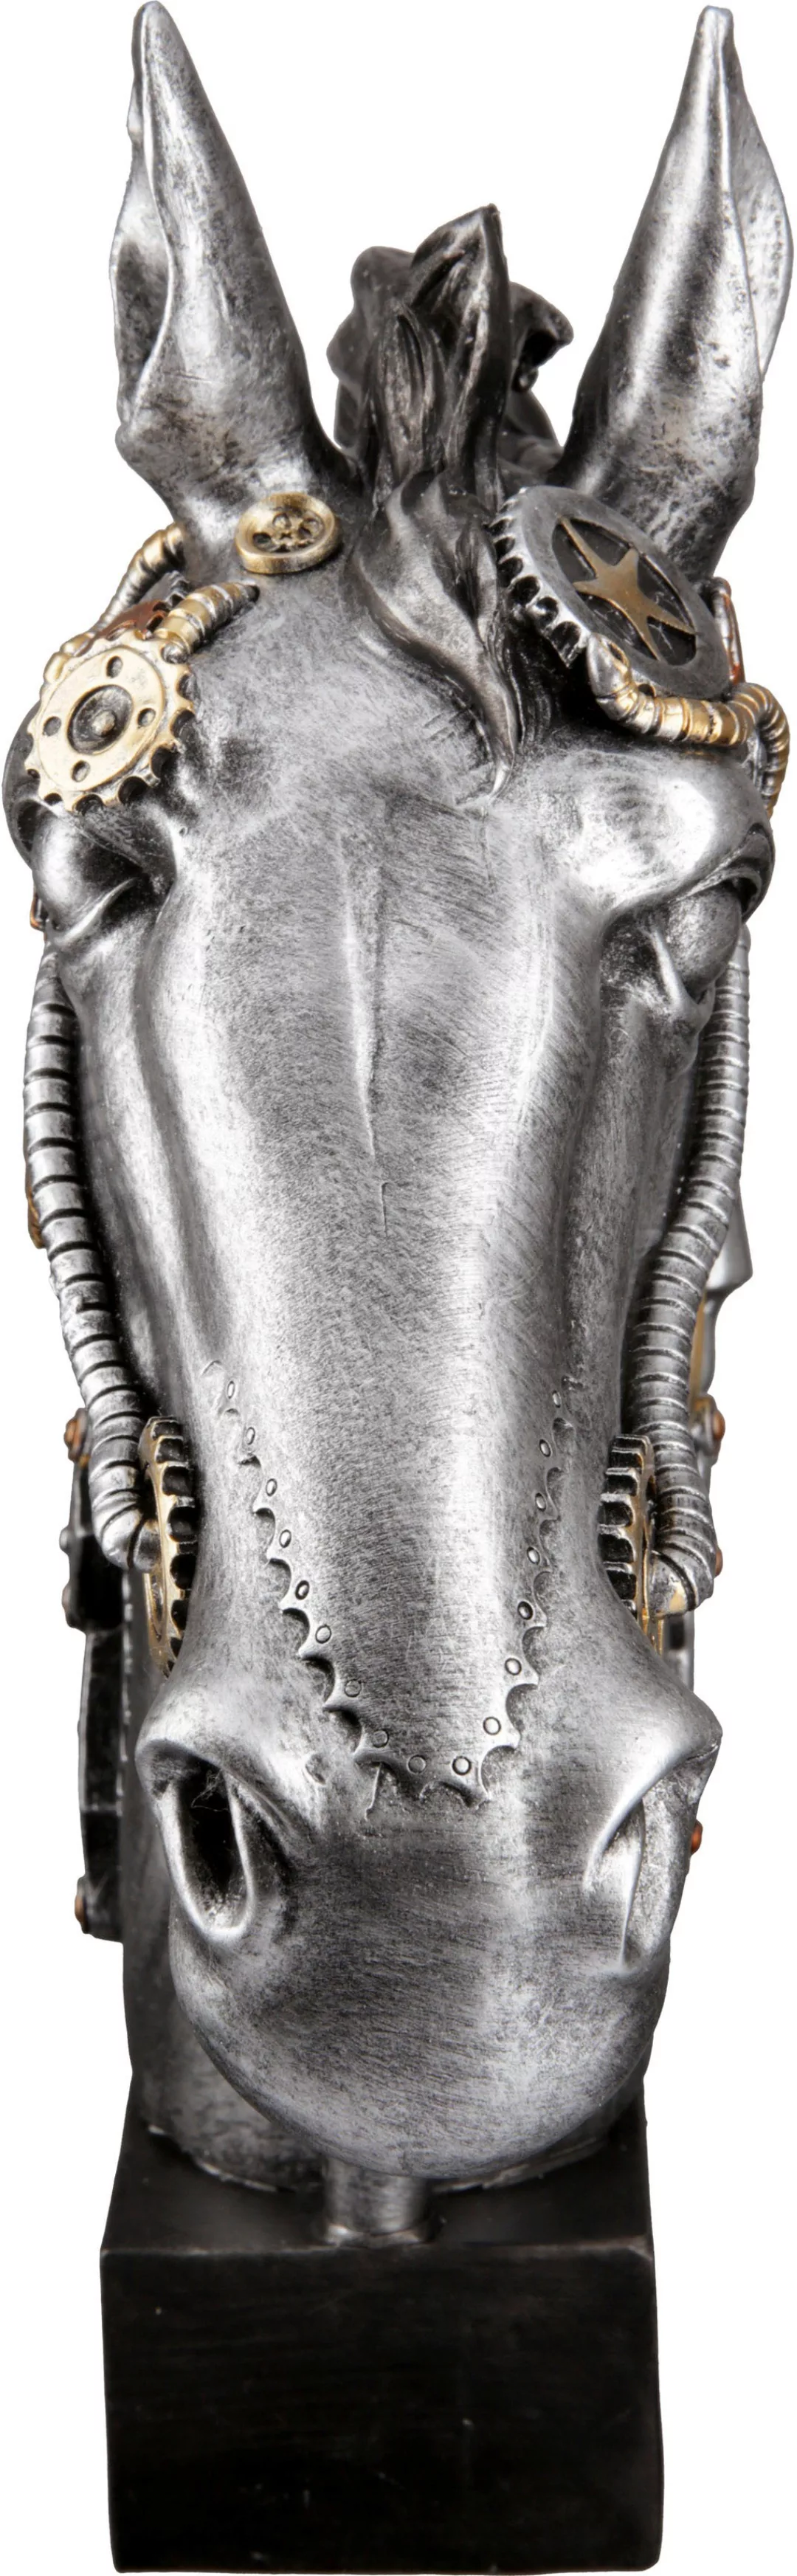 Casablanca by Gilde Tierfigur "Skulptur Steampunk Horse" günstig online kaufen